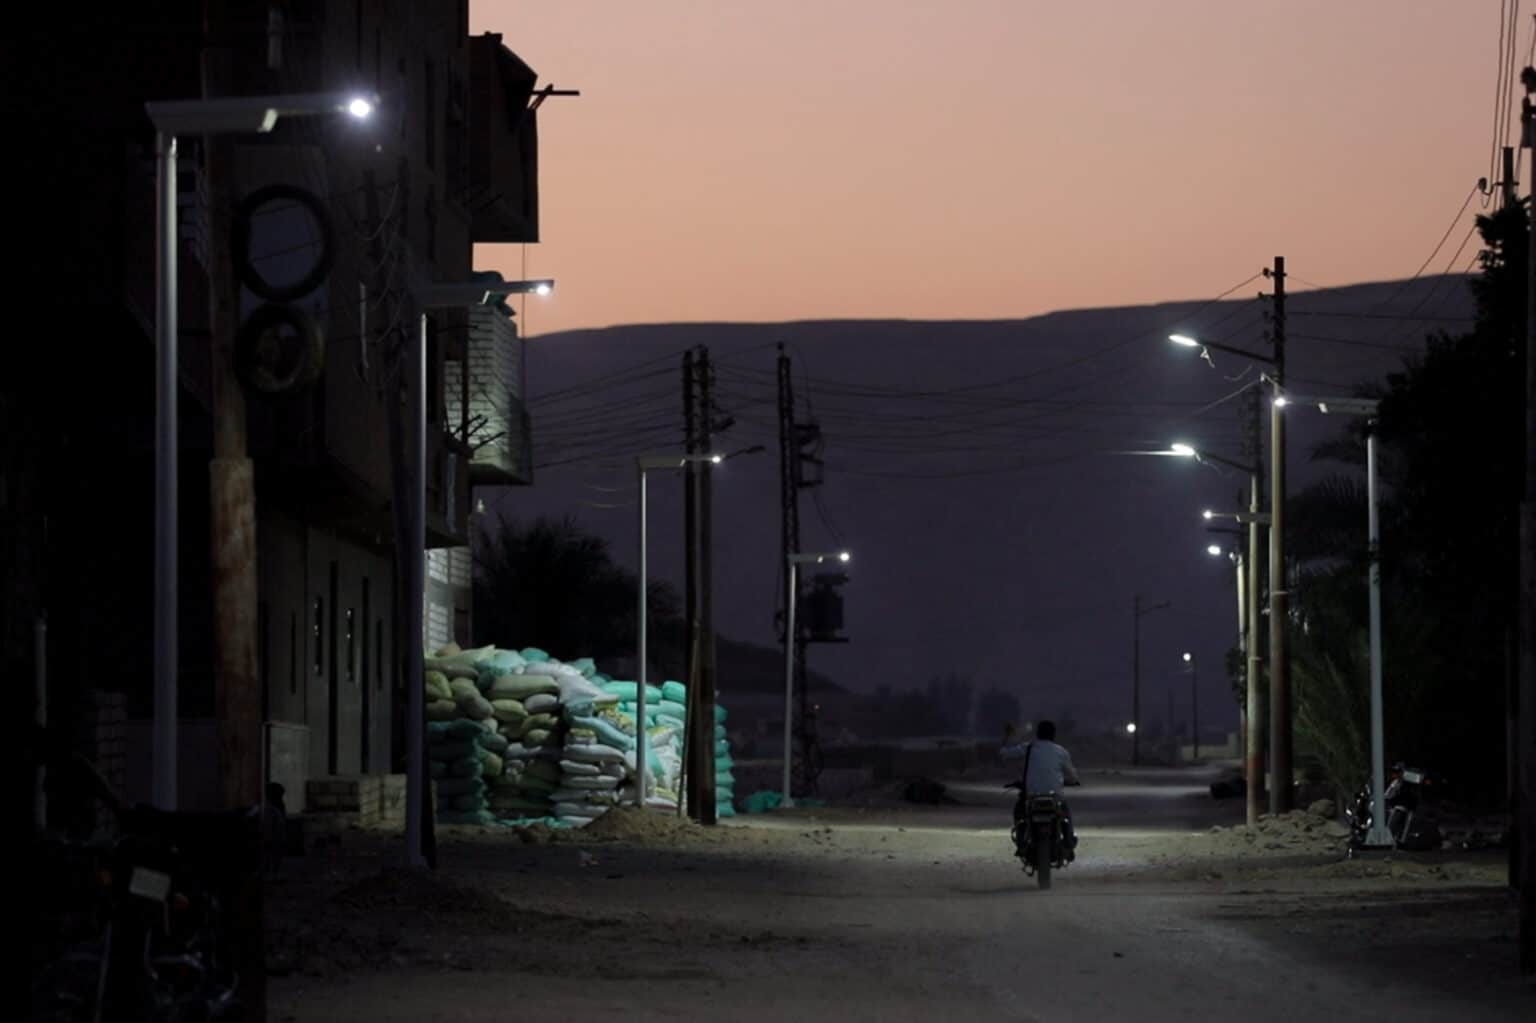 Eclairage public dans une zone rurale, ville d'Habaisha, Egypte